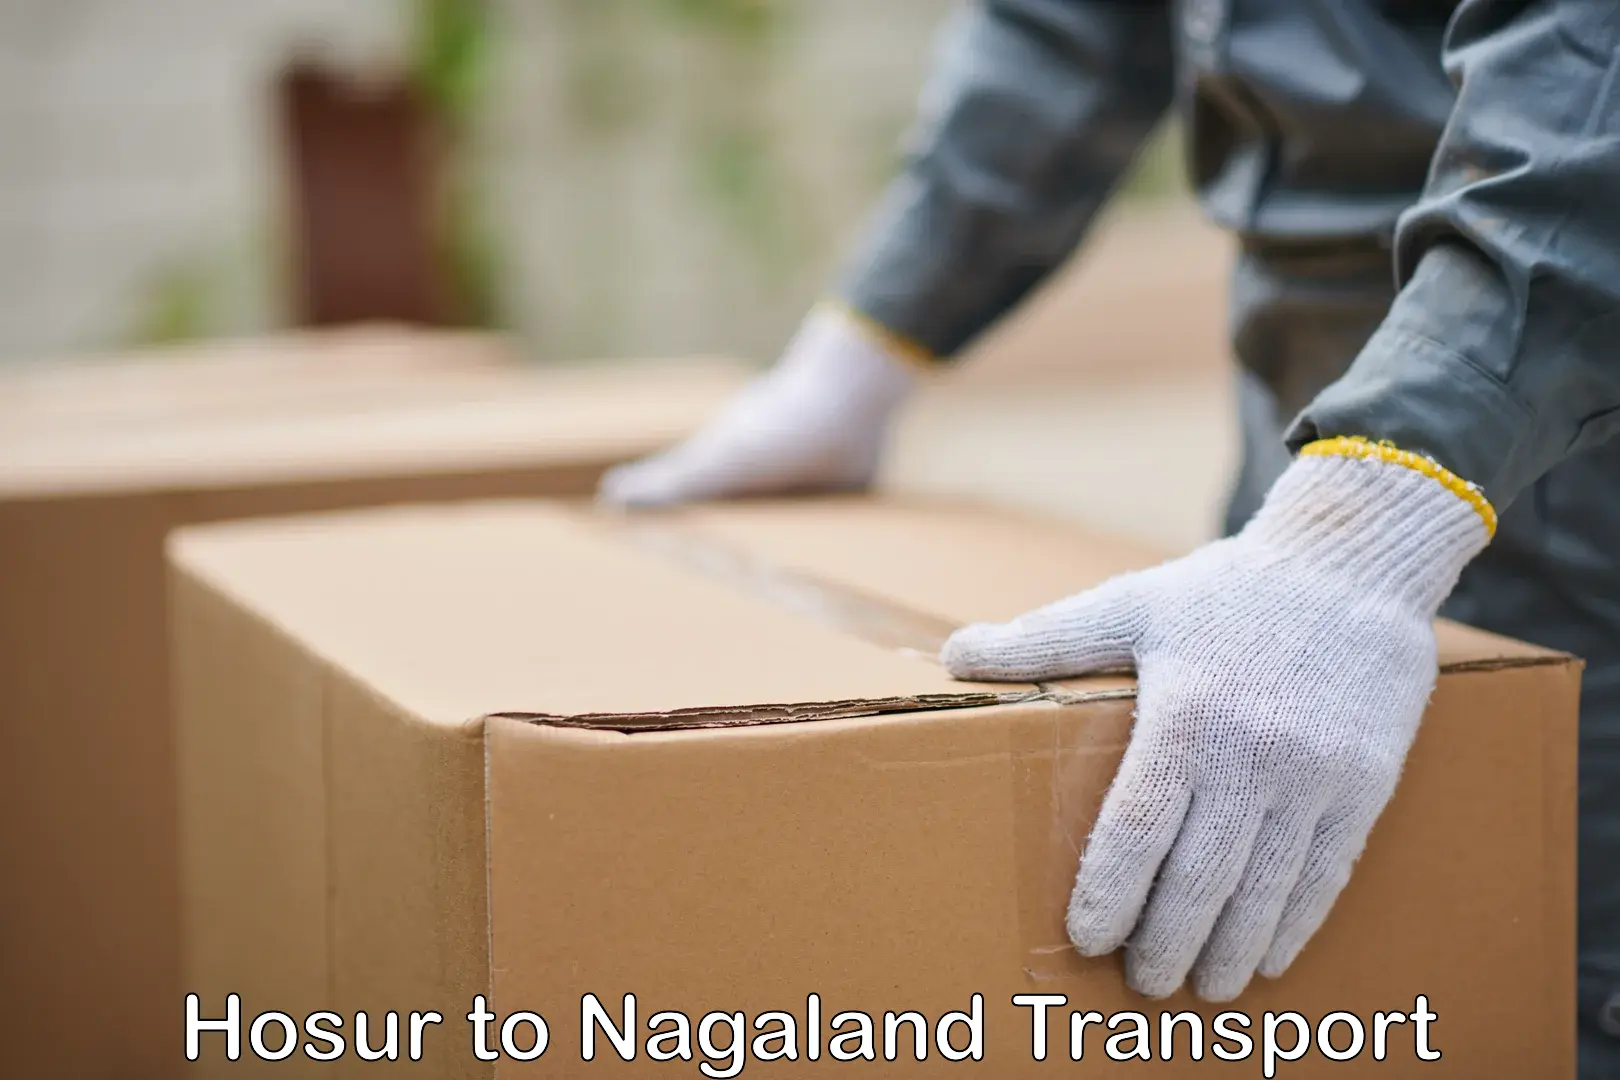 Online transport service Hosur to Nagaland